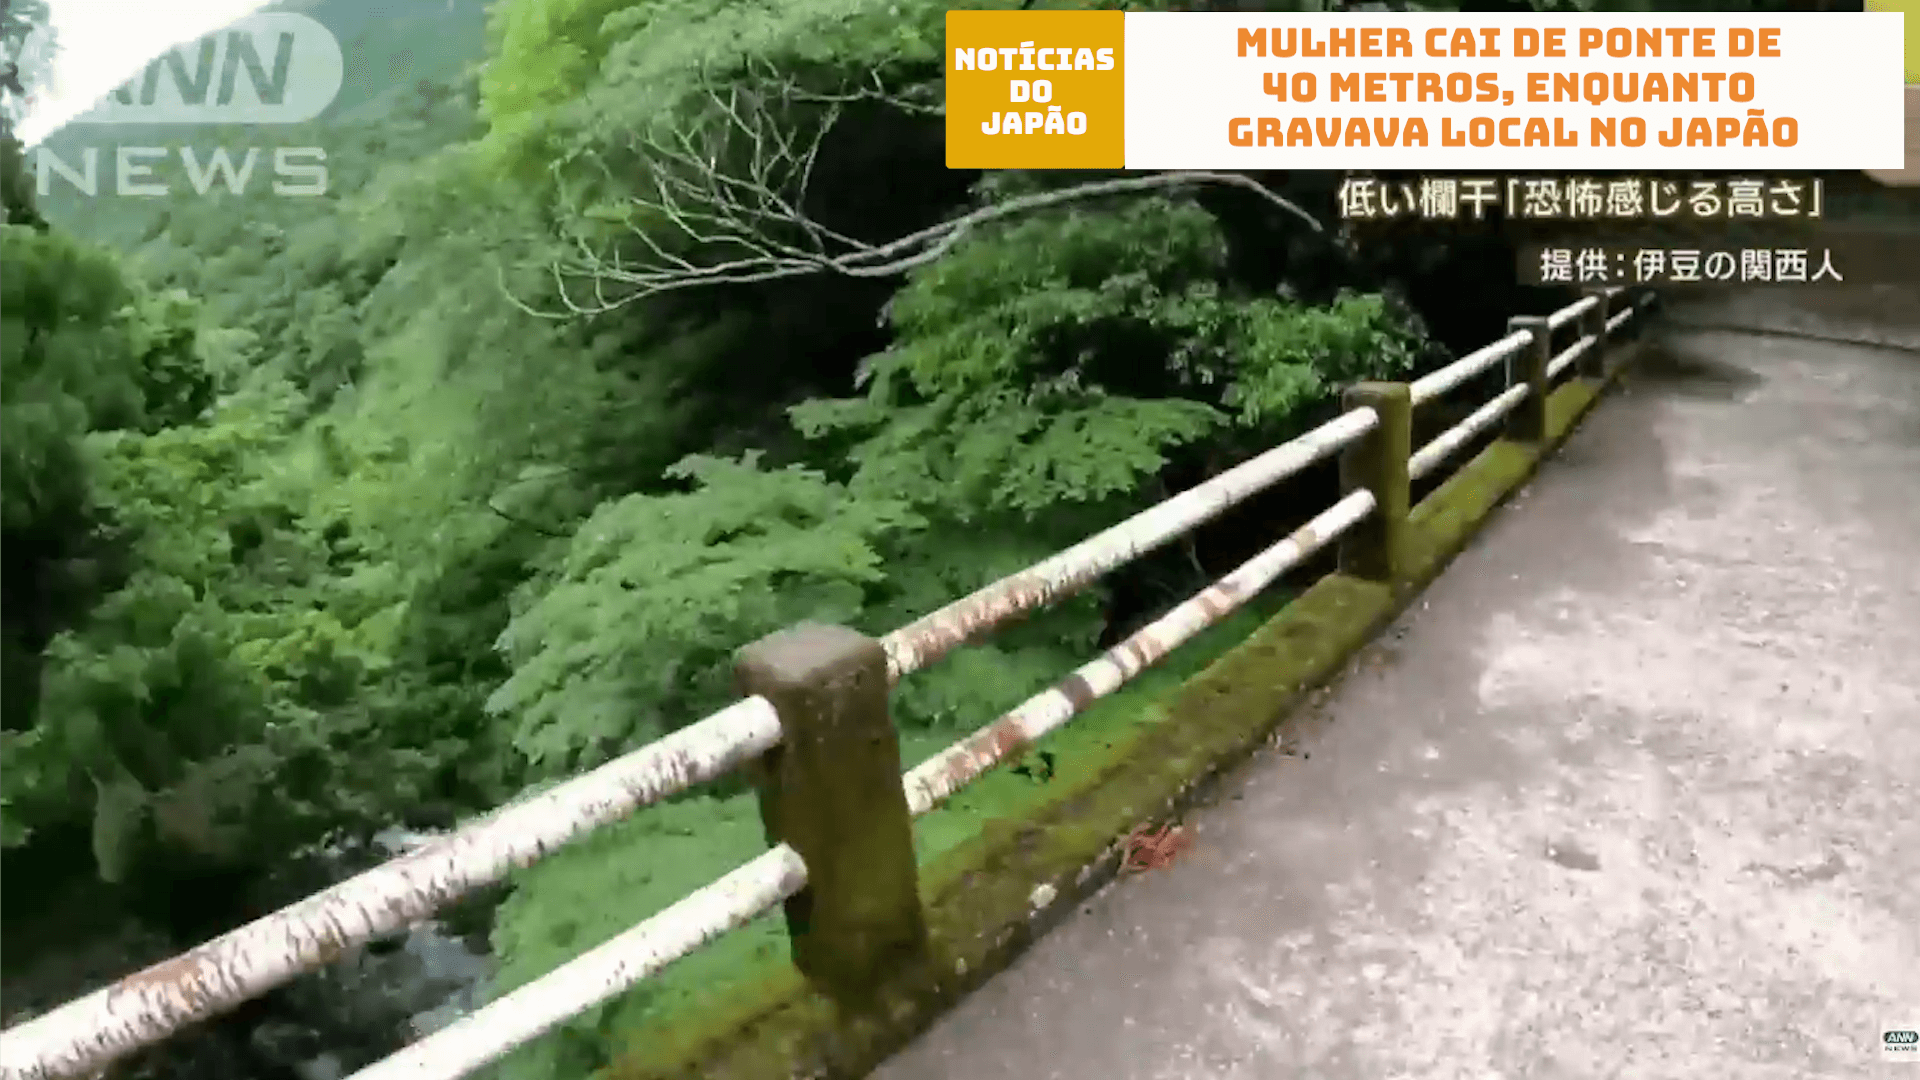 Mulher cai de ponte de 40 metros, enquanto gravava local no Japão 